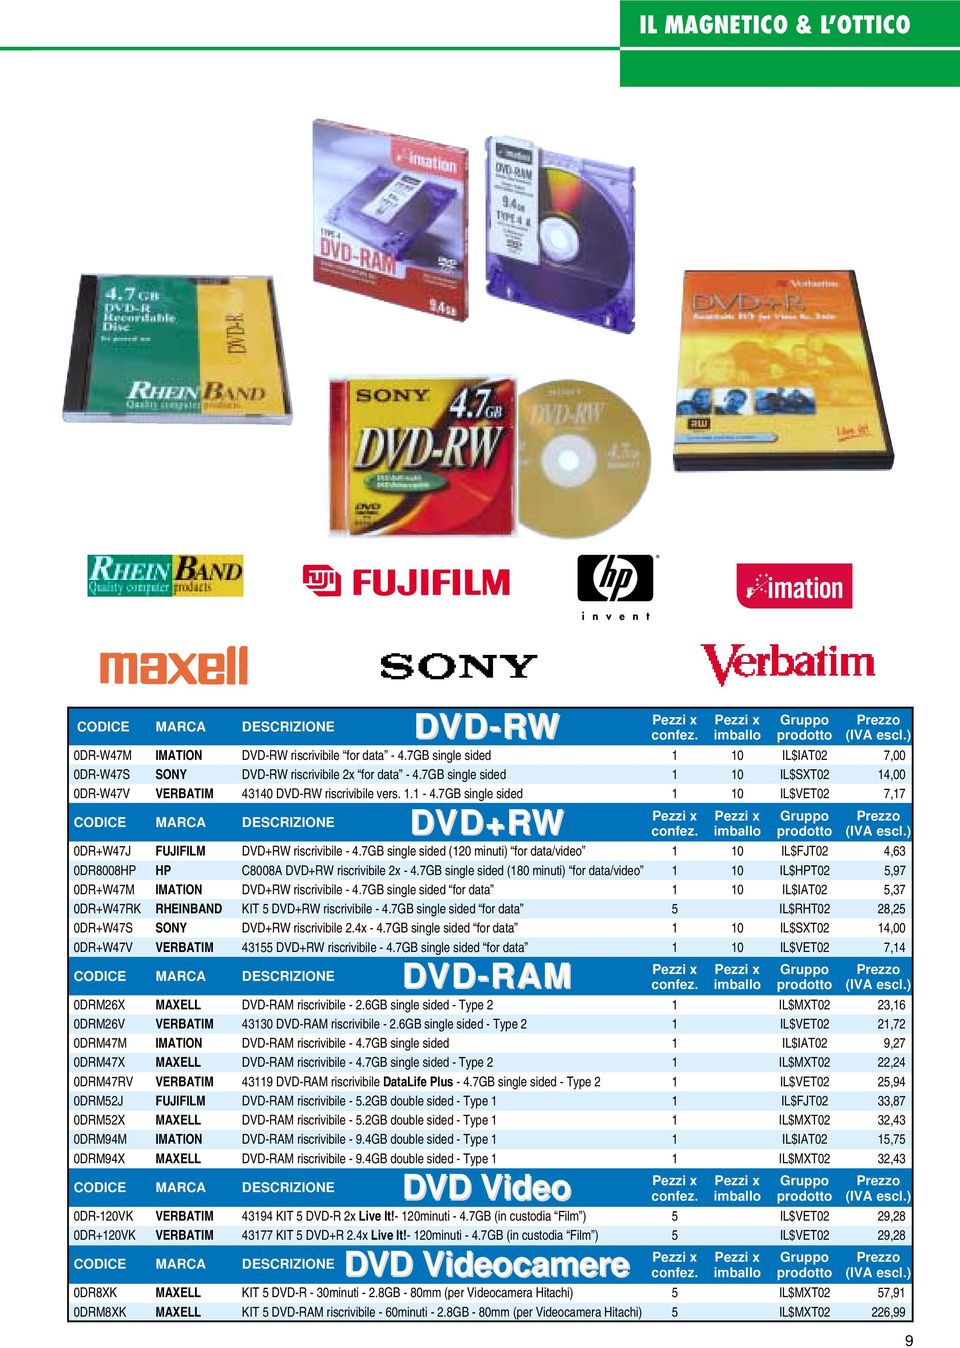 7GB single sided 1 10 IL$VET02 7,17 MARCA DVD+RW confez. imballo prodotto (IVA escl.) 0DR+W47J FUJIFILM DVD+RW riscrivibile - 4.